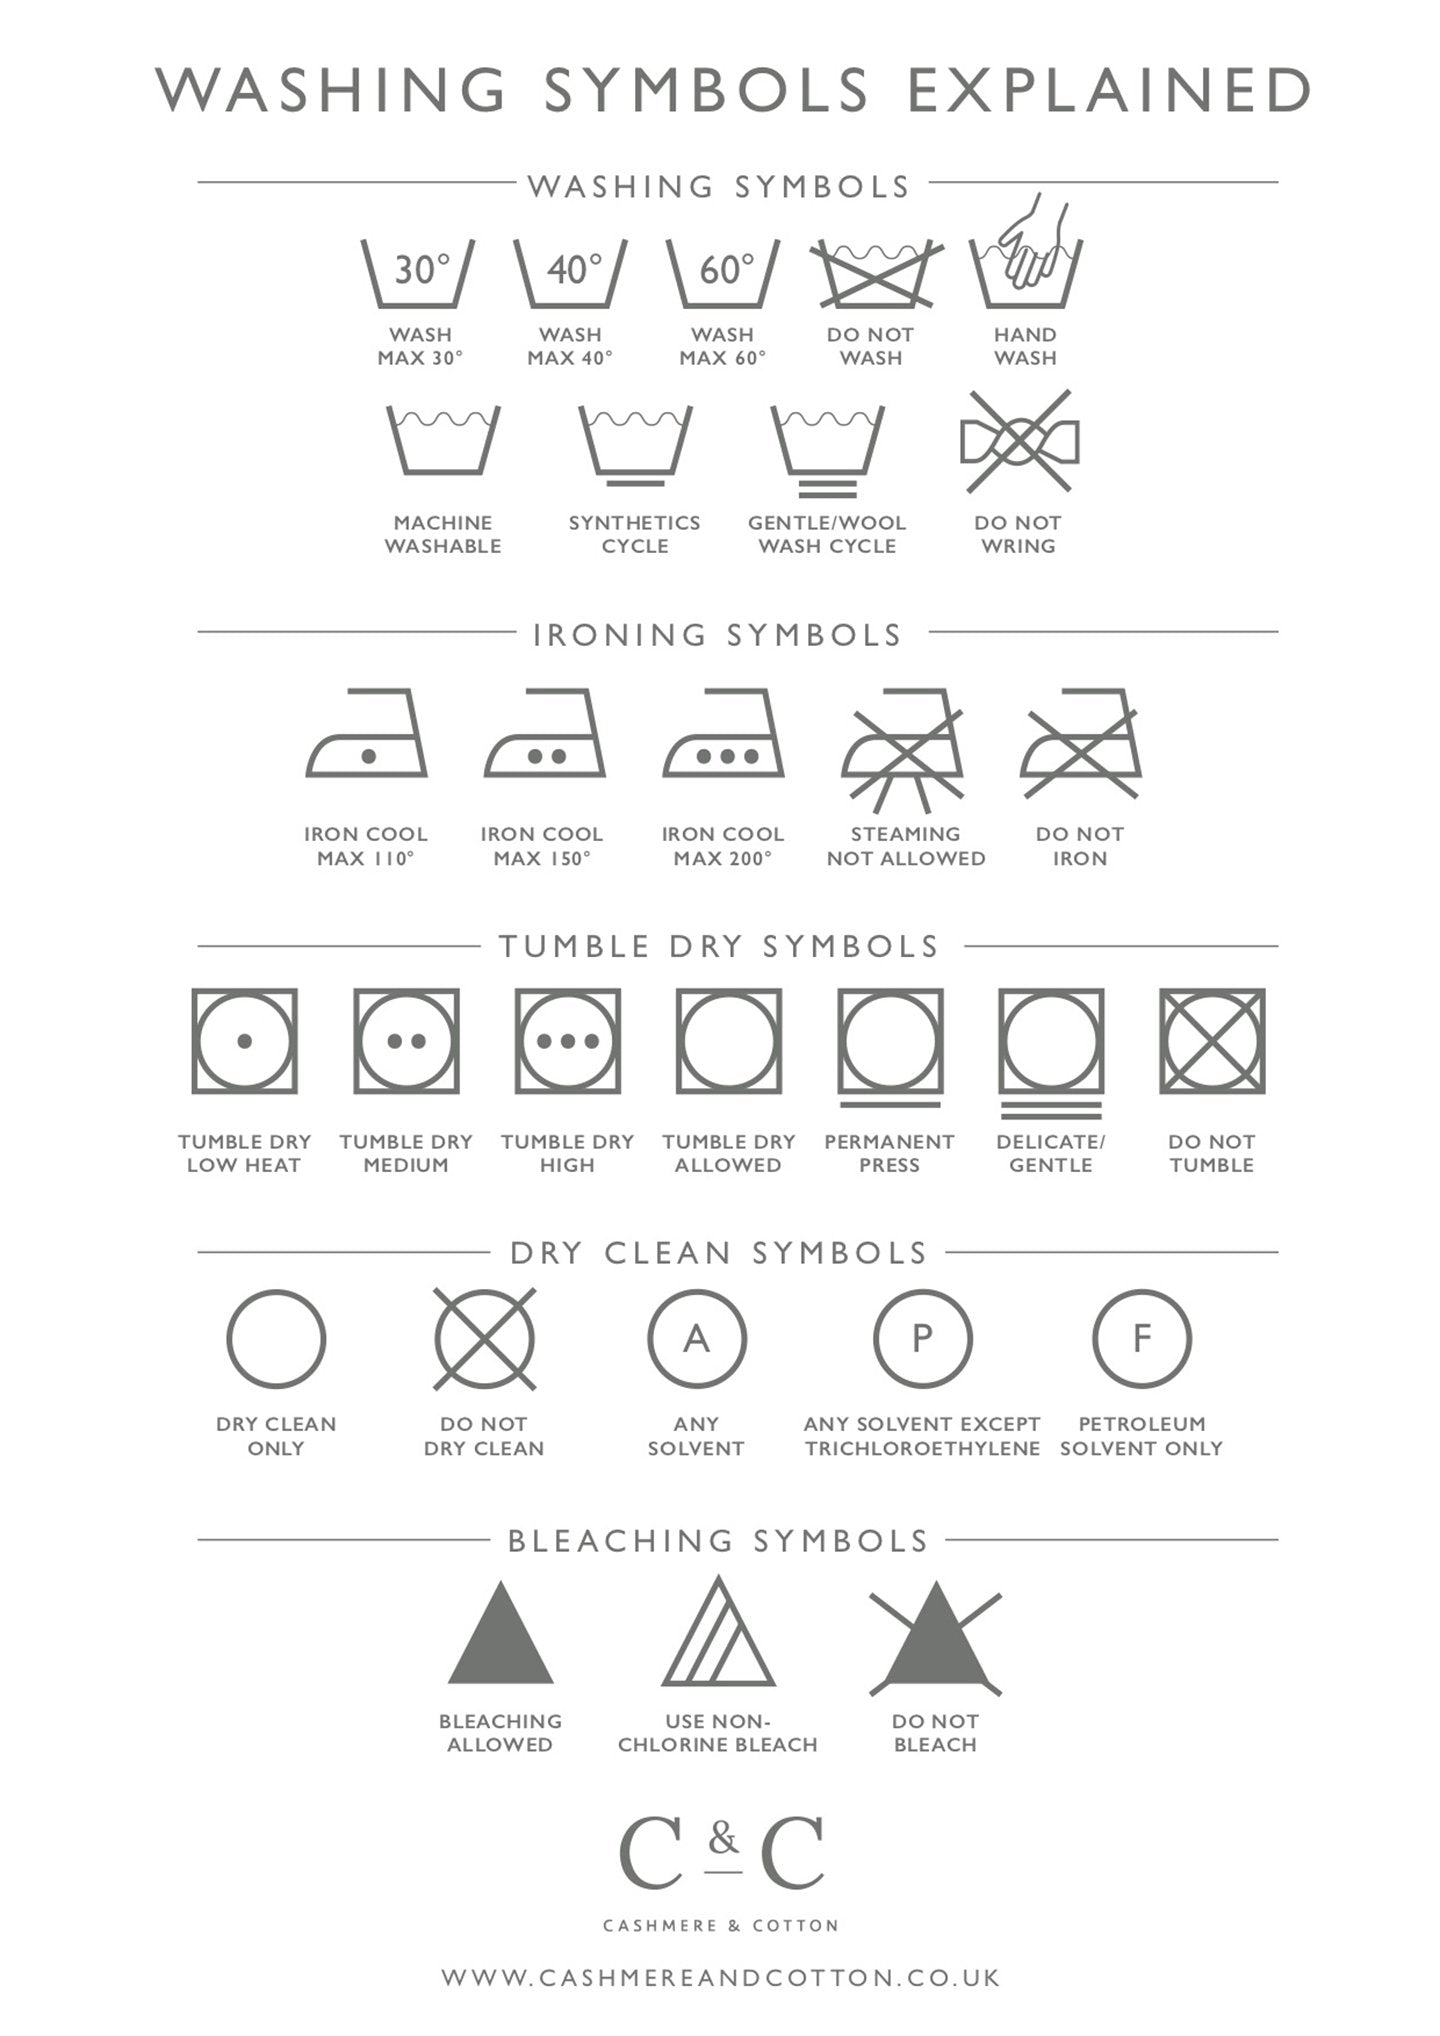 Washing & Laundry Symbols Explained & Cashmere & Cotton